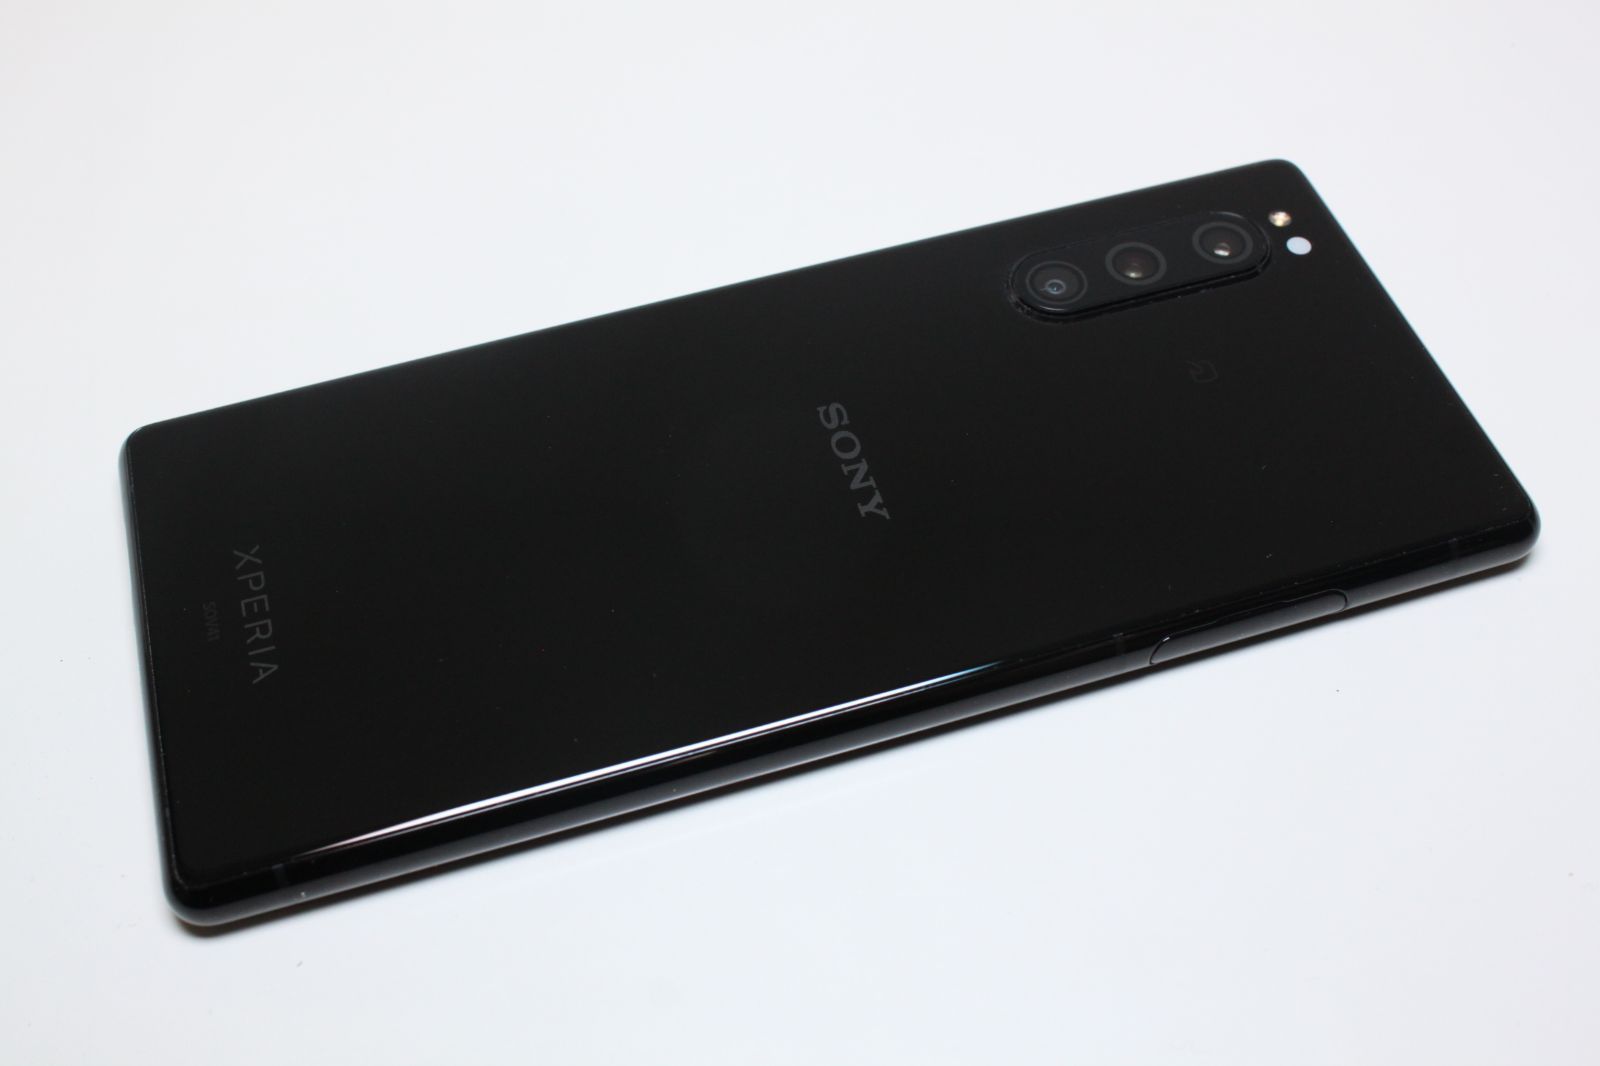 A5489 Xperia 5 SOV41 ブラック AU版 SIMロック解除済み 判定○ 動画確認済み - 携帯電話、スマートフォン